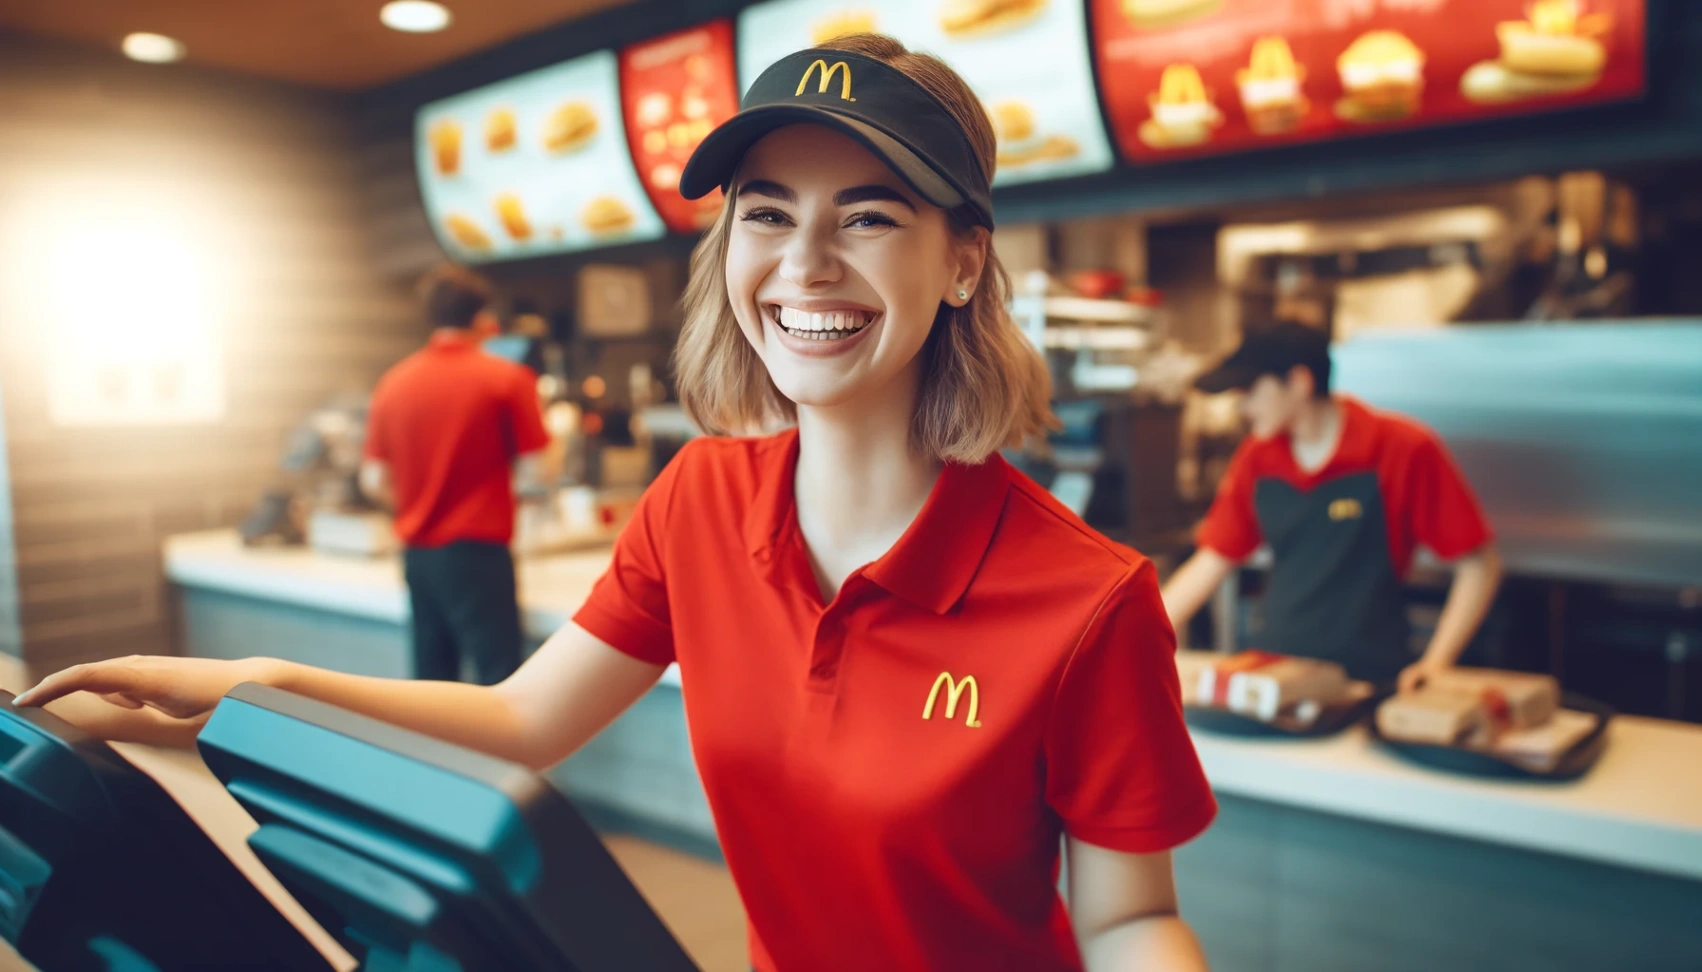 McDonald's töötaotlus: Sinu tee põnevasse tulevikku